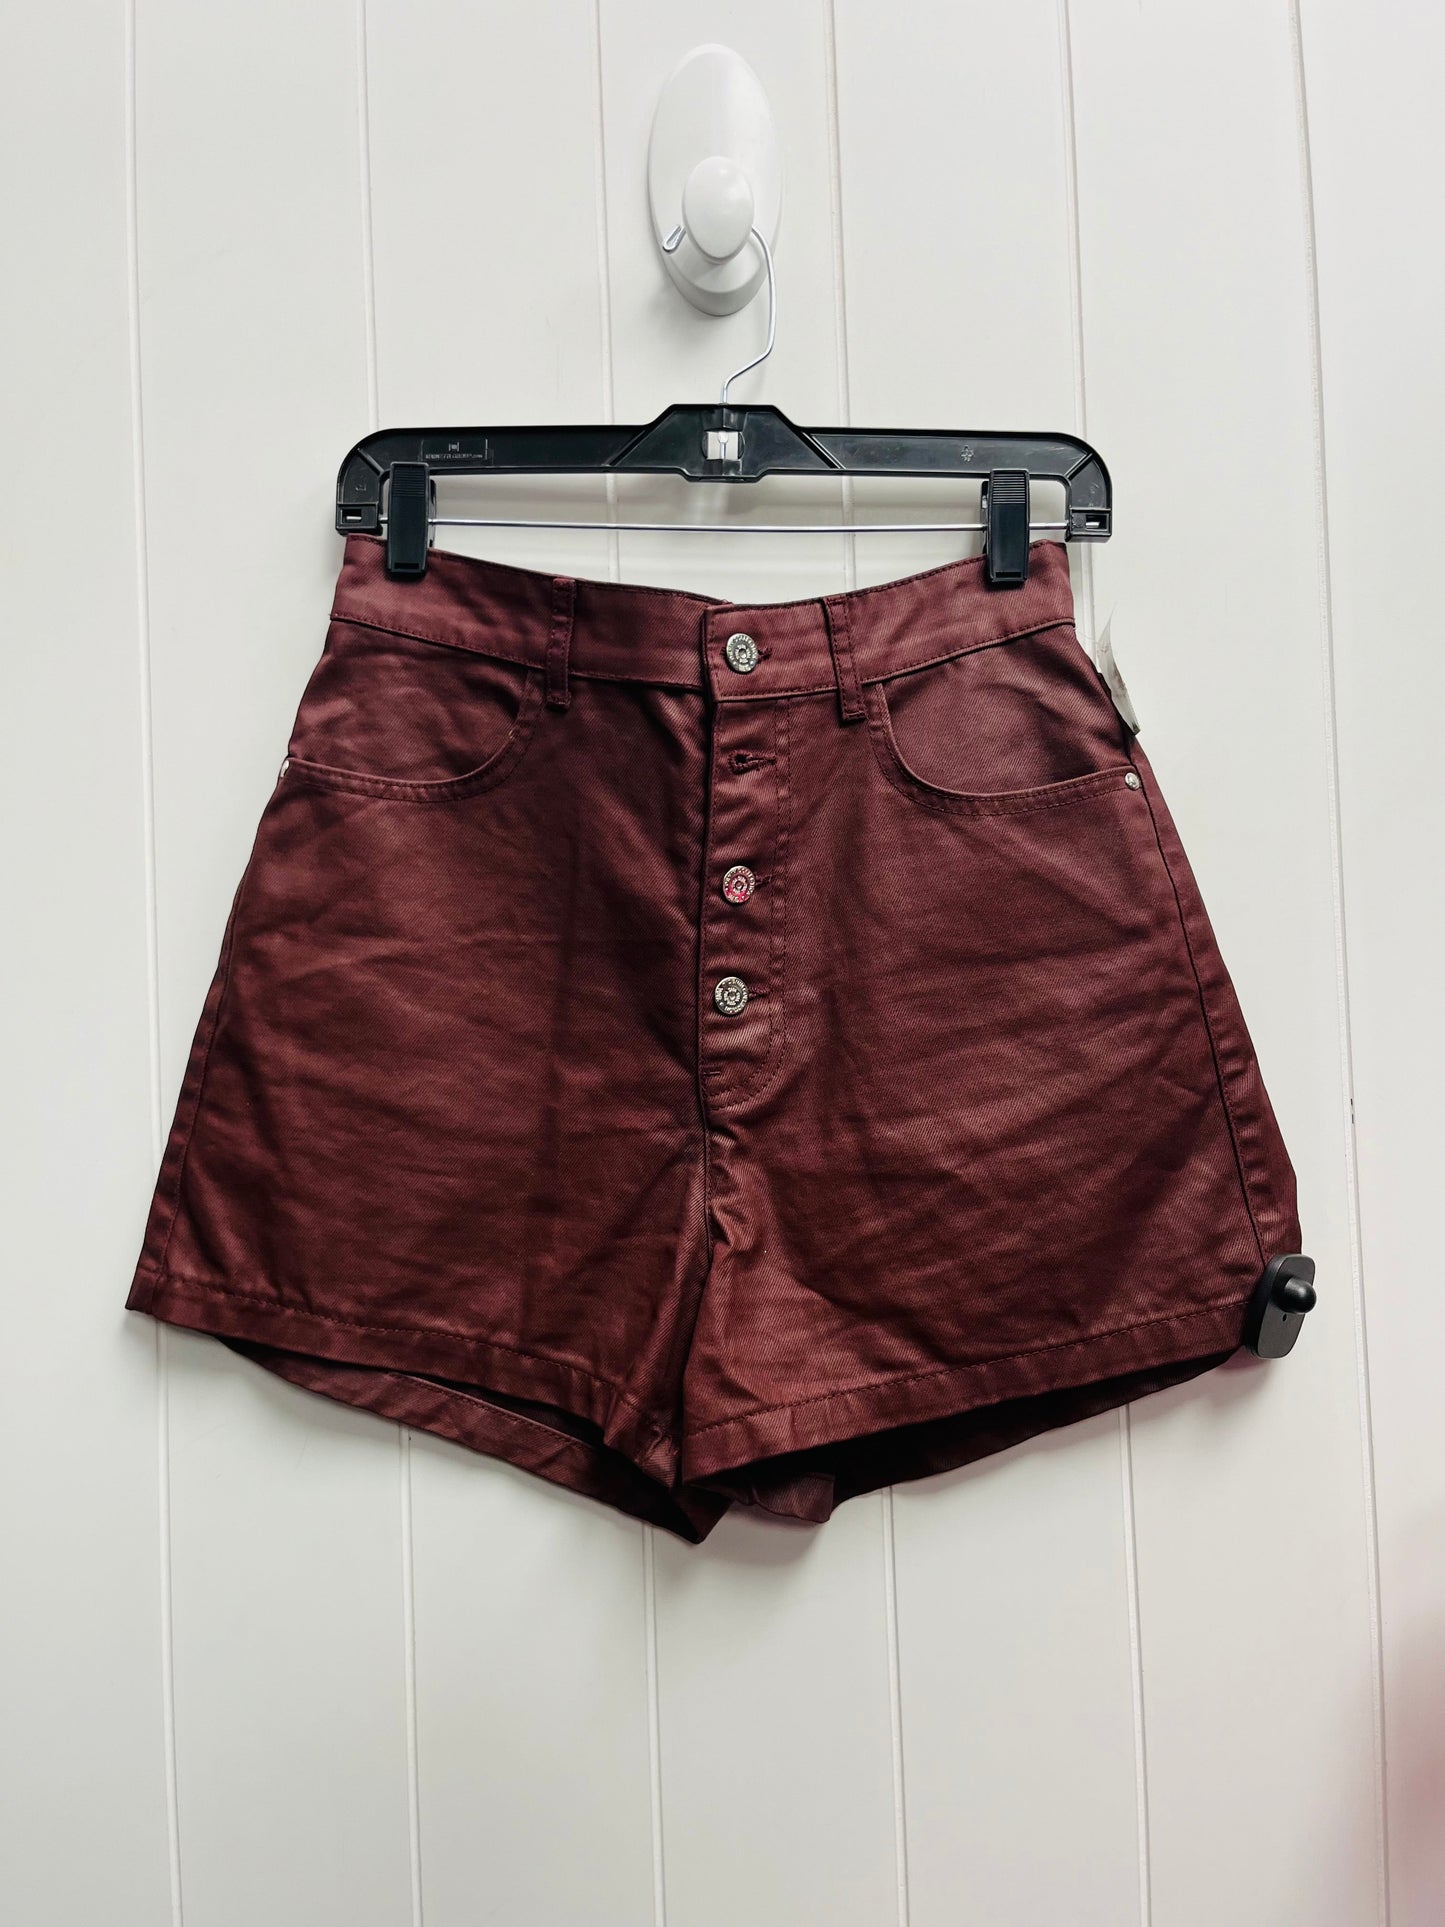 Maroon Shorts Zara, Size 6